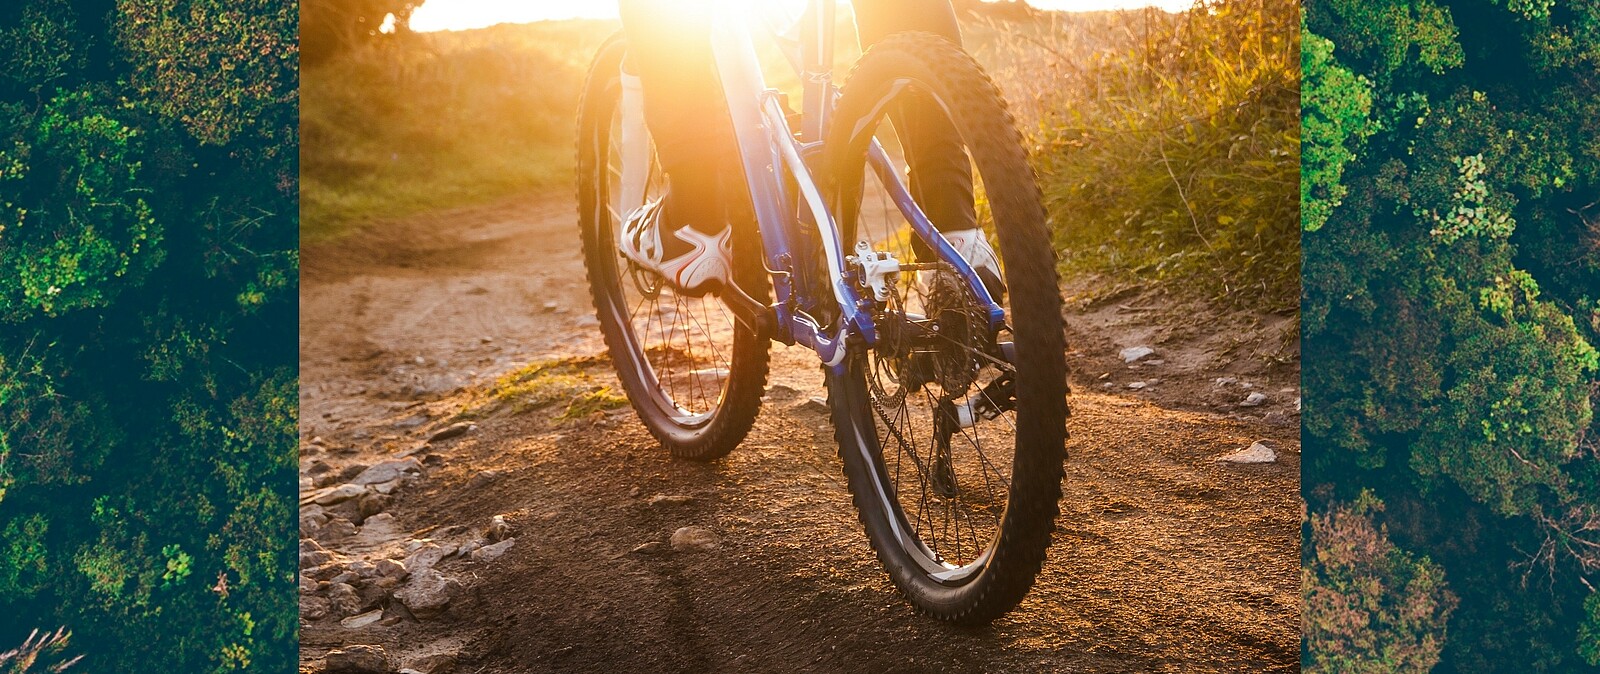 Bei einem tollen aktiven Tag darf ein geliehenes E-Bike für die Gebirgstour im Erzgebirge nicht fehlen. Unsere Bikes stammen u.a. von Haibike oder CUBE.